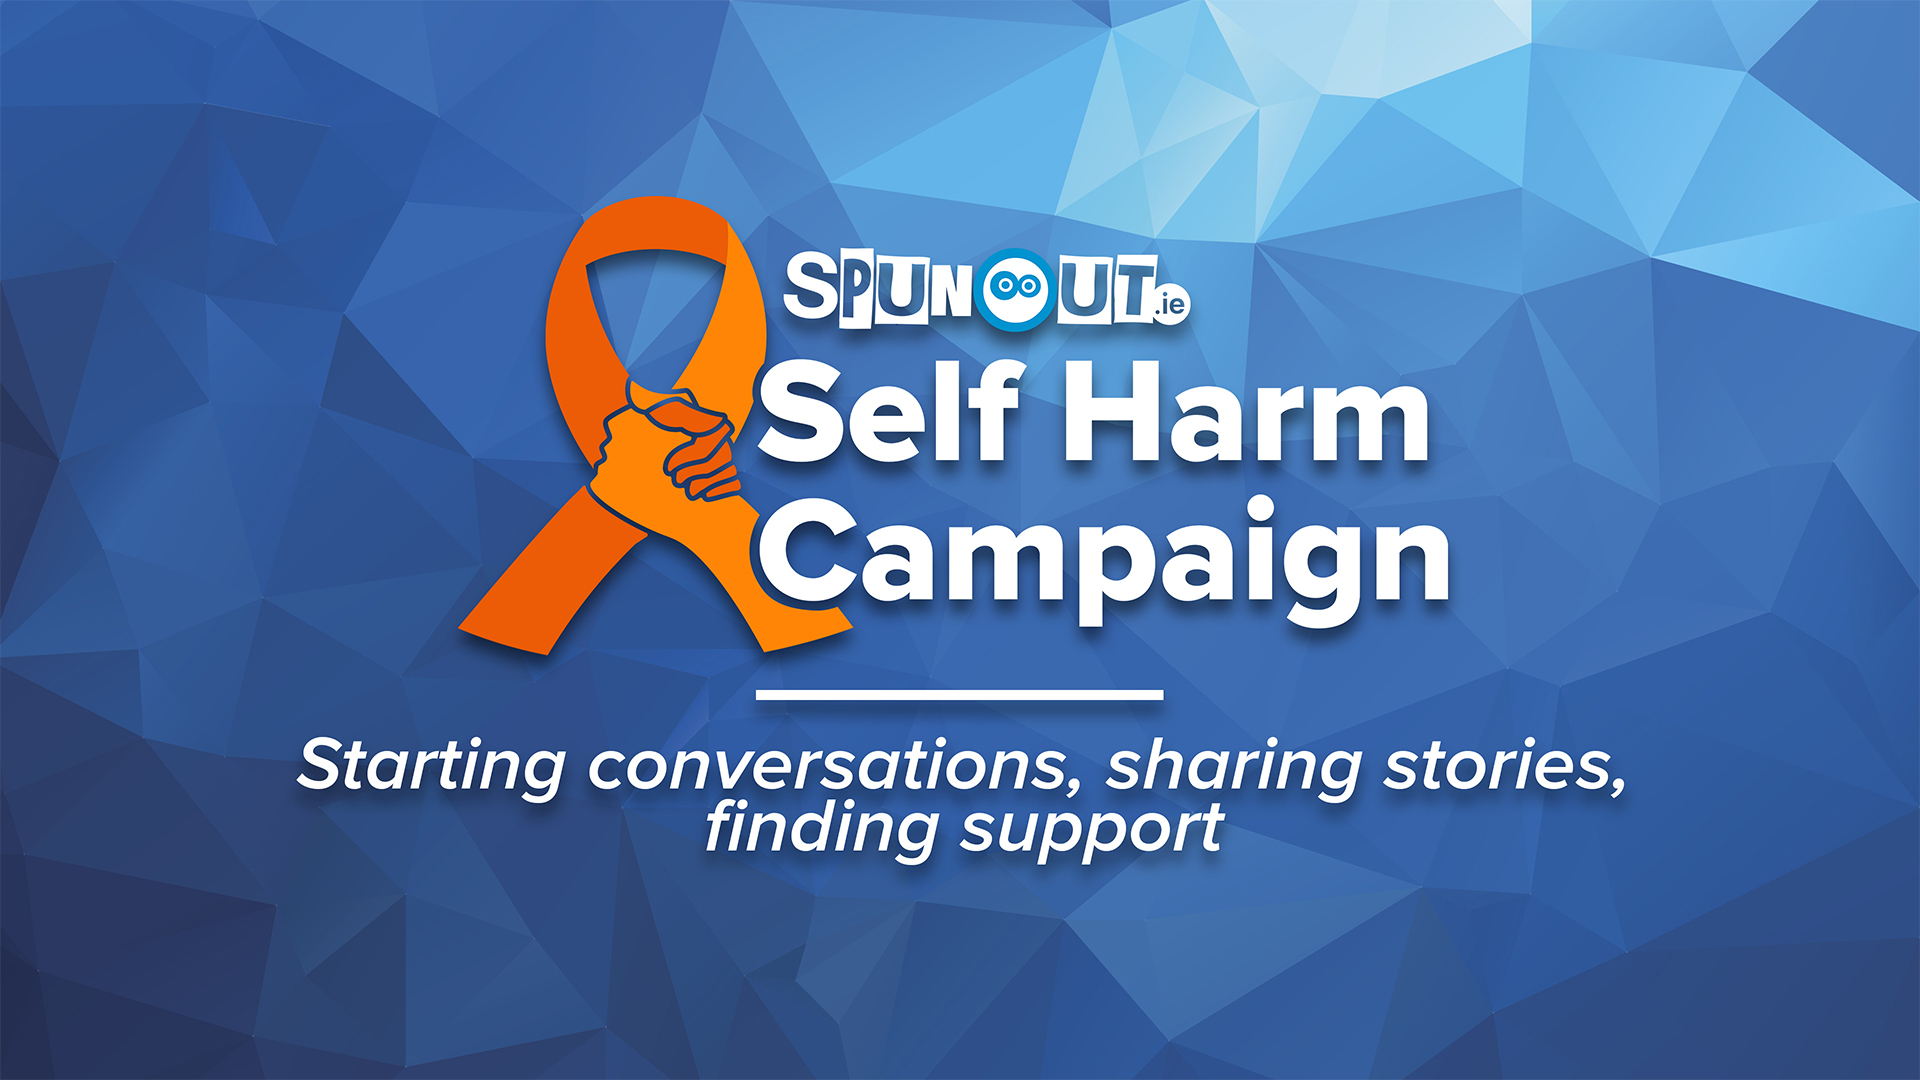 SpunOut.ie Self Harm Campaign - spunout